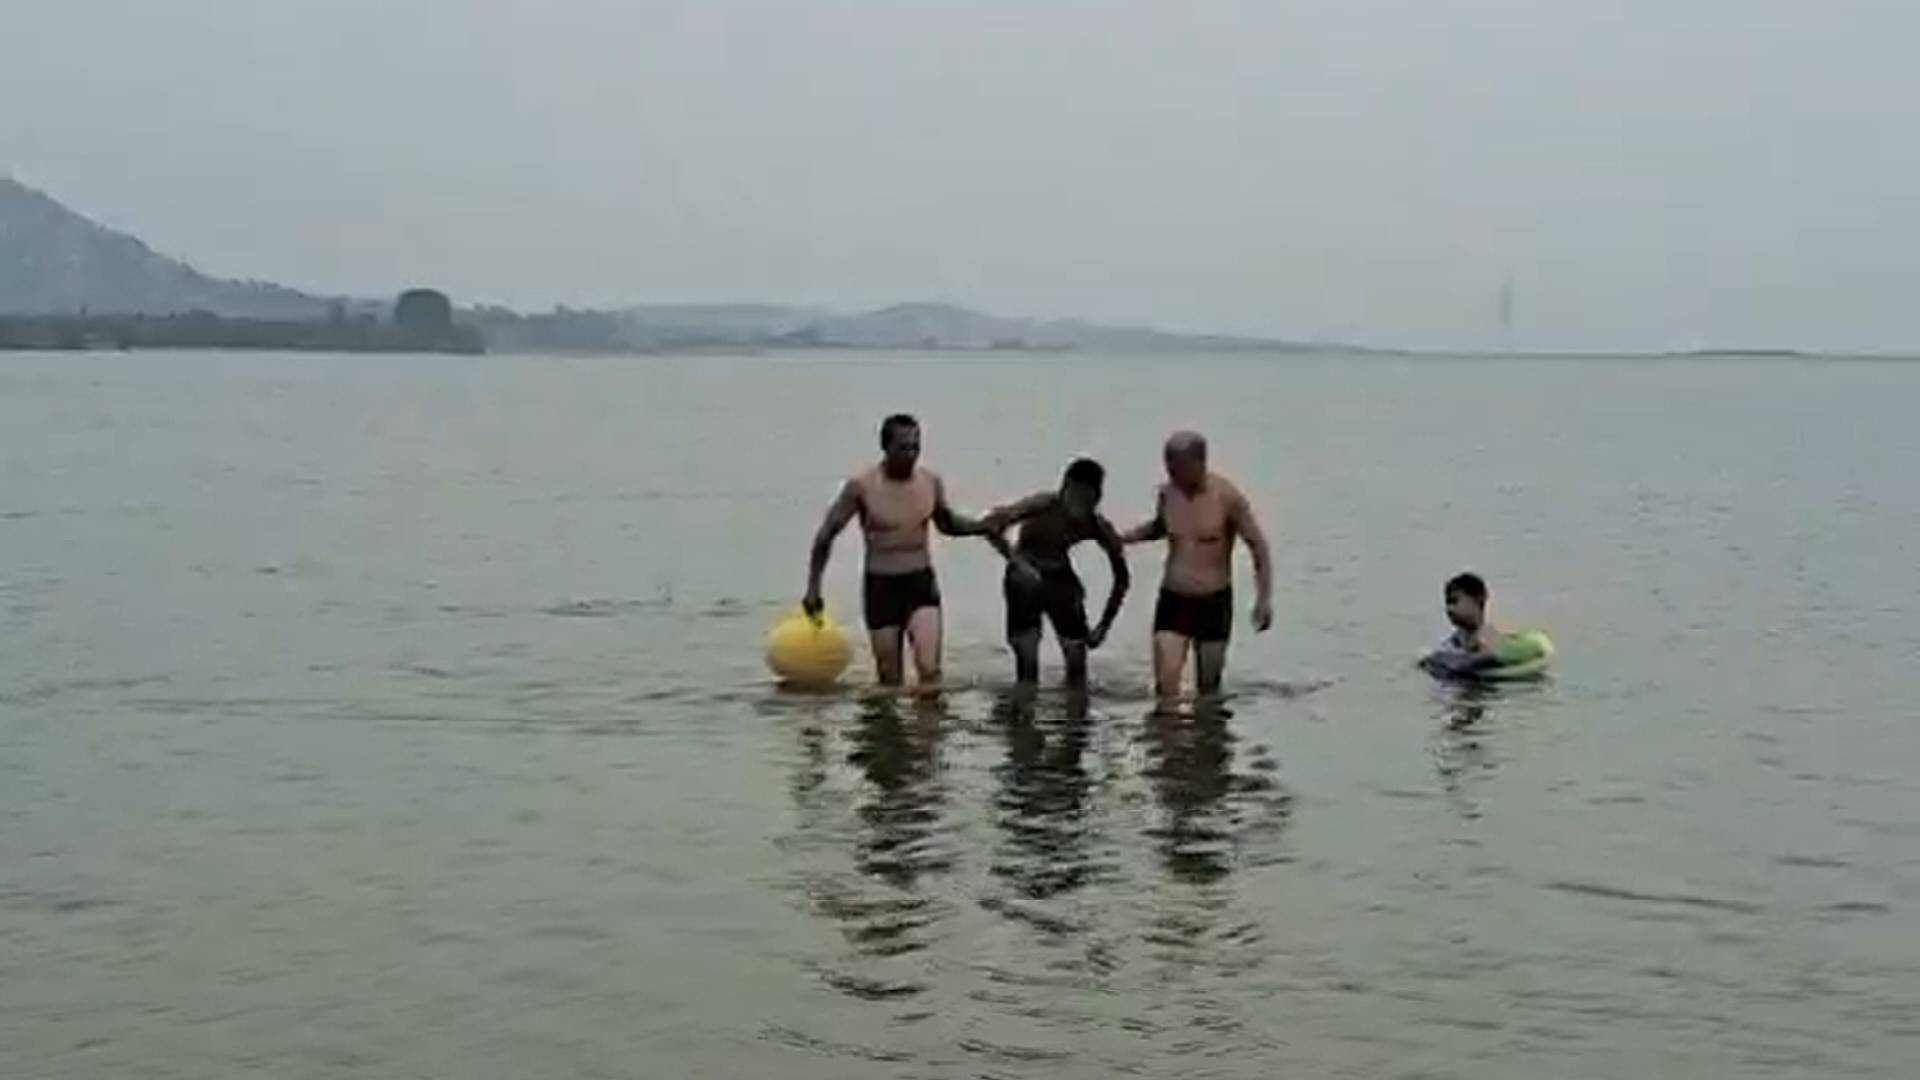 游泳需远离危险水域！一男子野泳险溺水 新泰市民联手成功营救